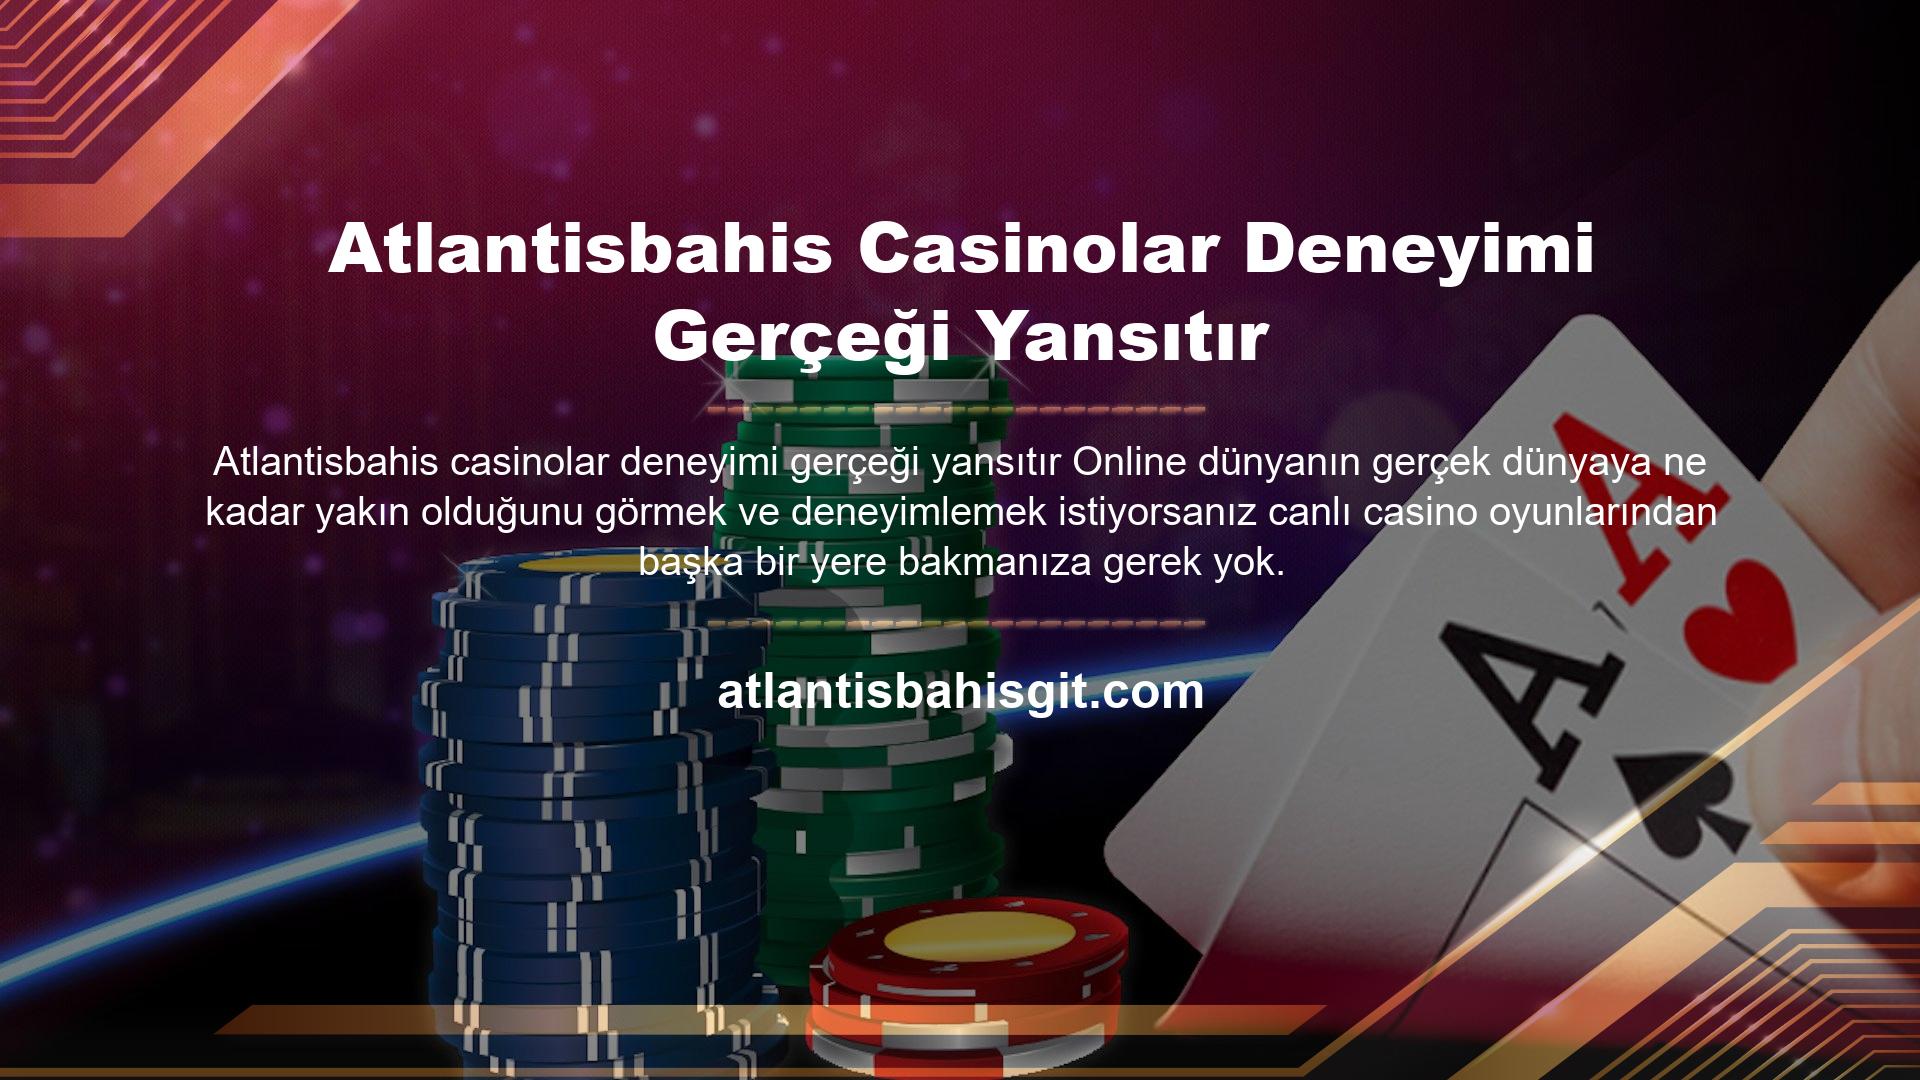 Atlantisbahis Casinolar Deneyimi Gerçeği Yansıtır